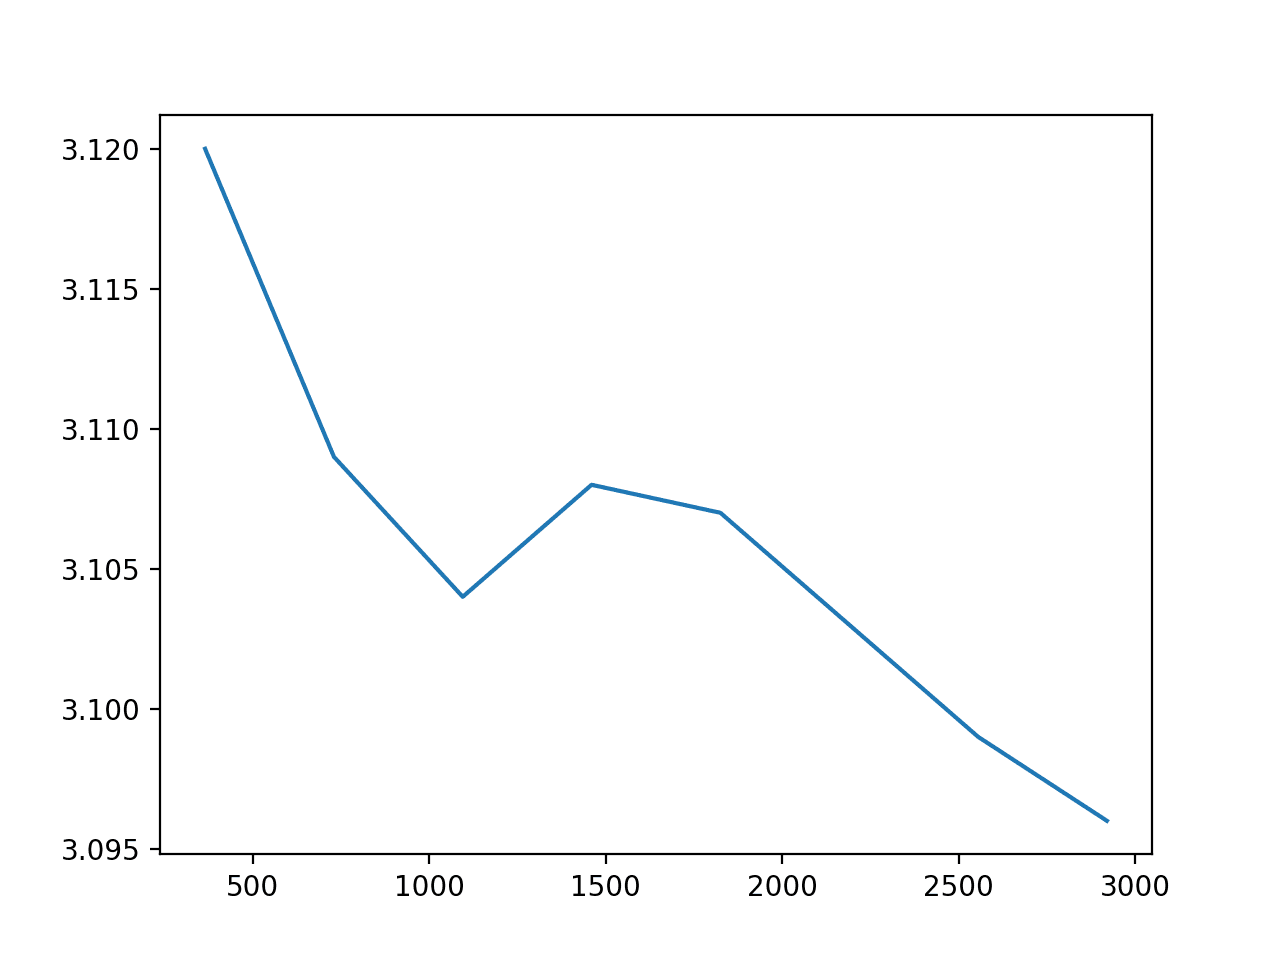 History Size vs ARIMA Model Error